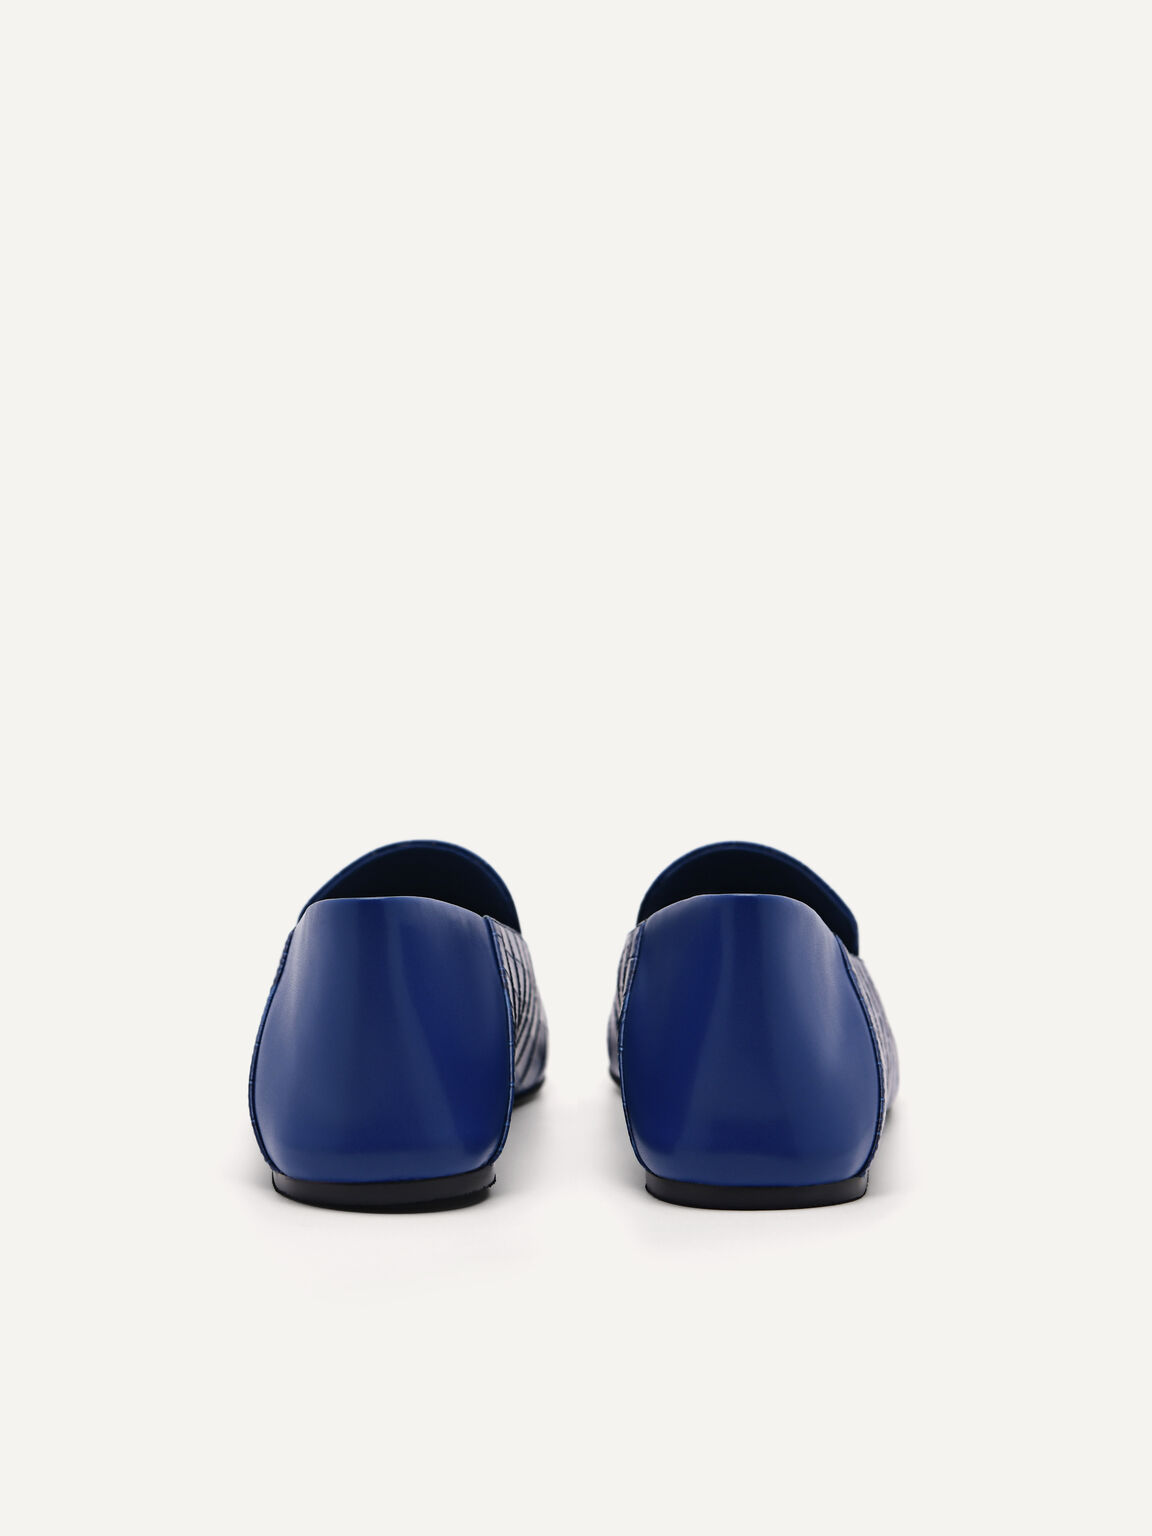 PEDRO工作室Kristen皮革平底鞋, 海军蓝色